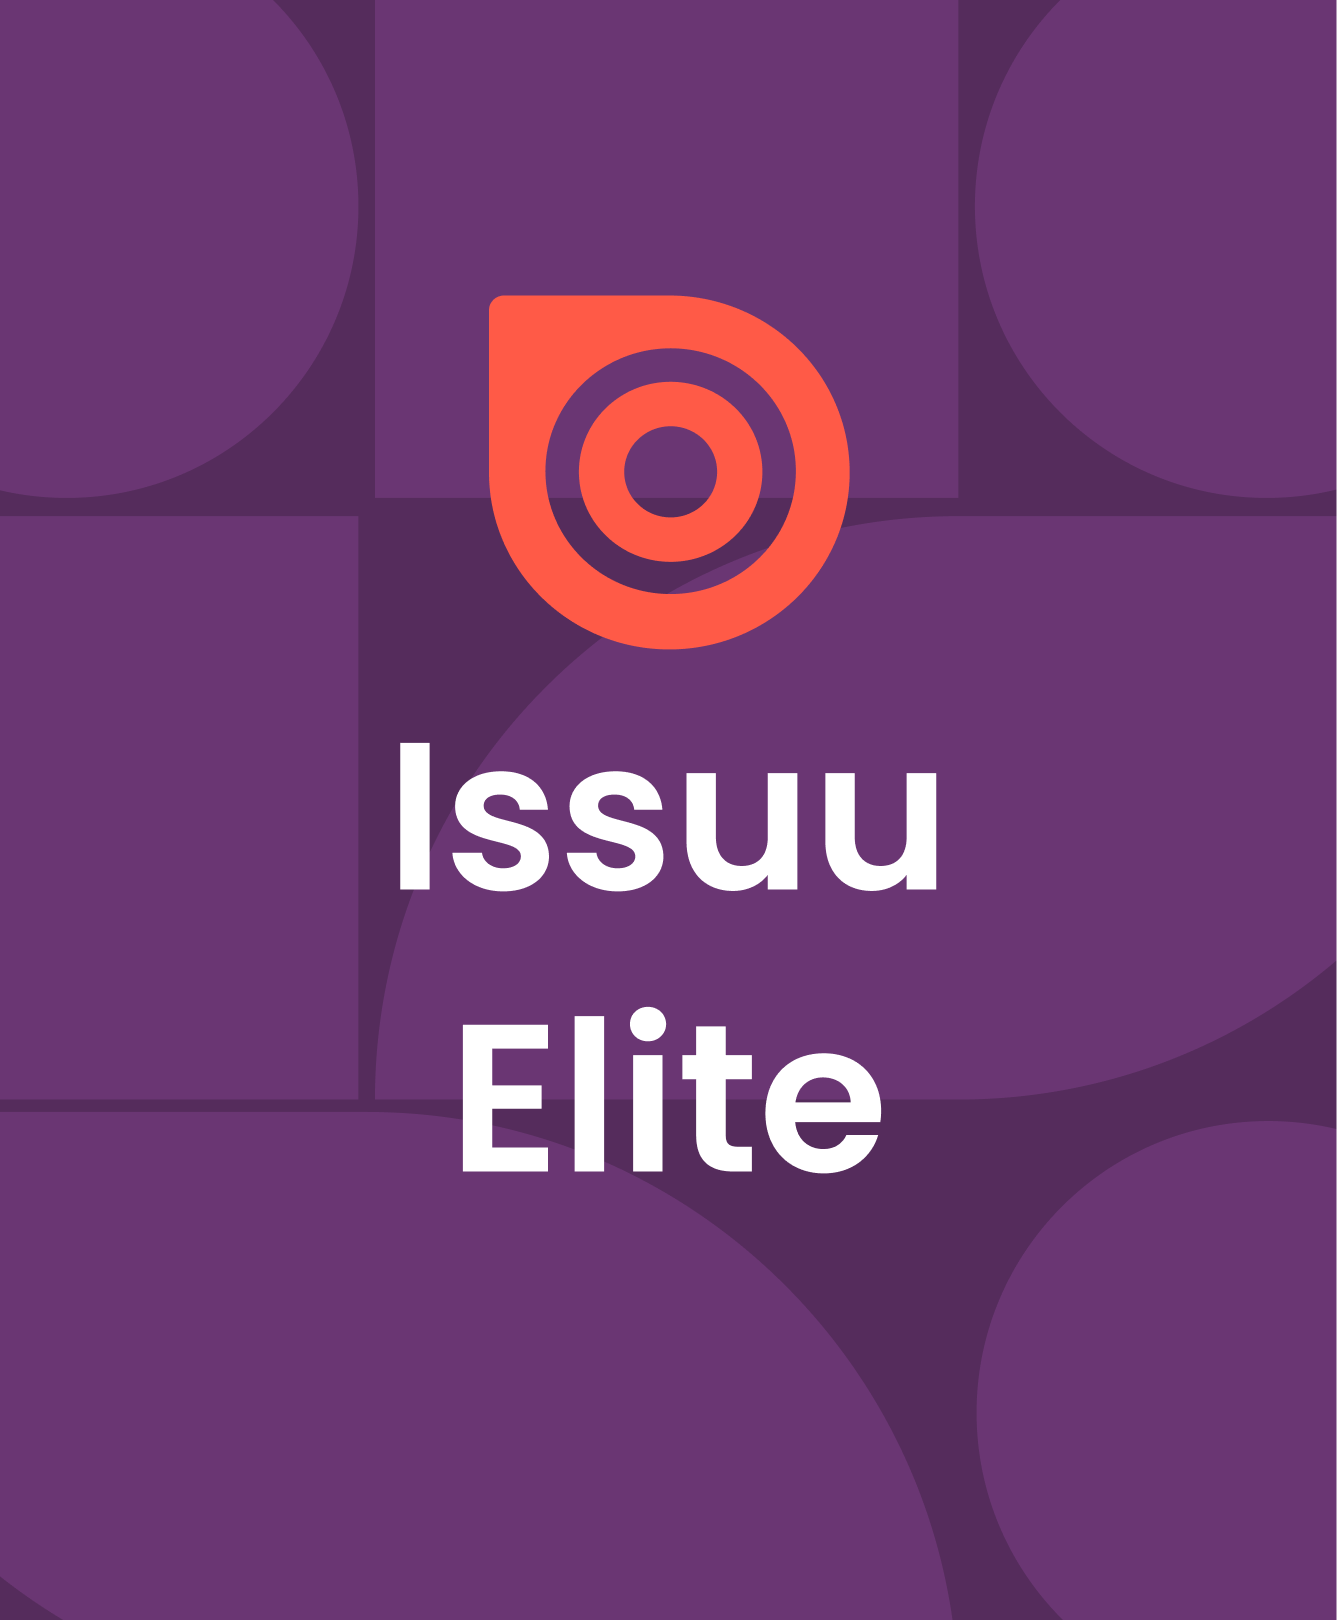 Issuu blog Issuu_Elite_Blog